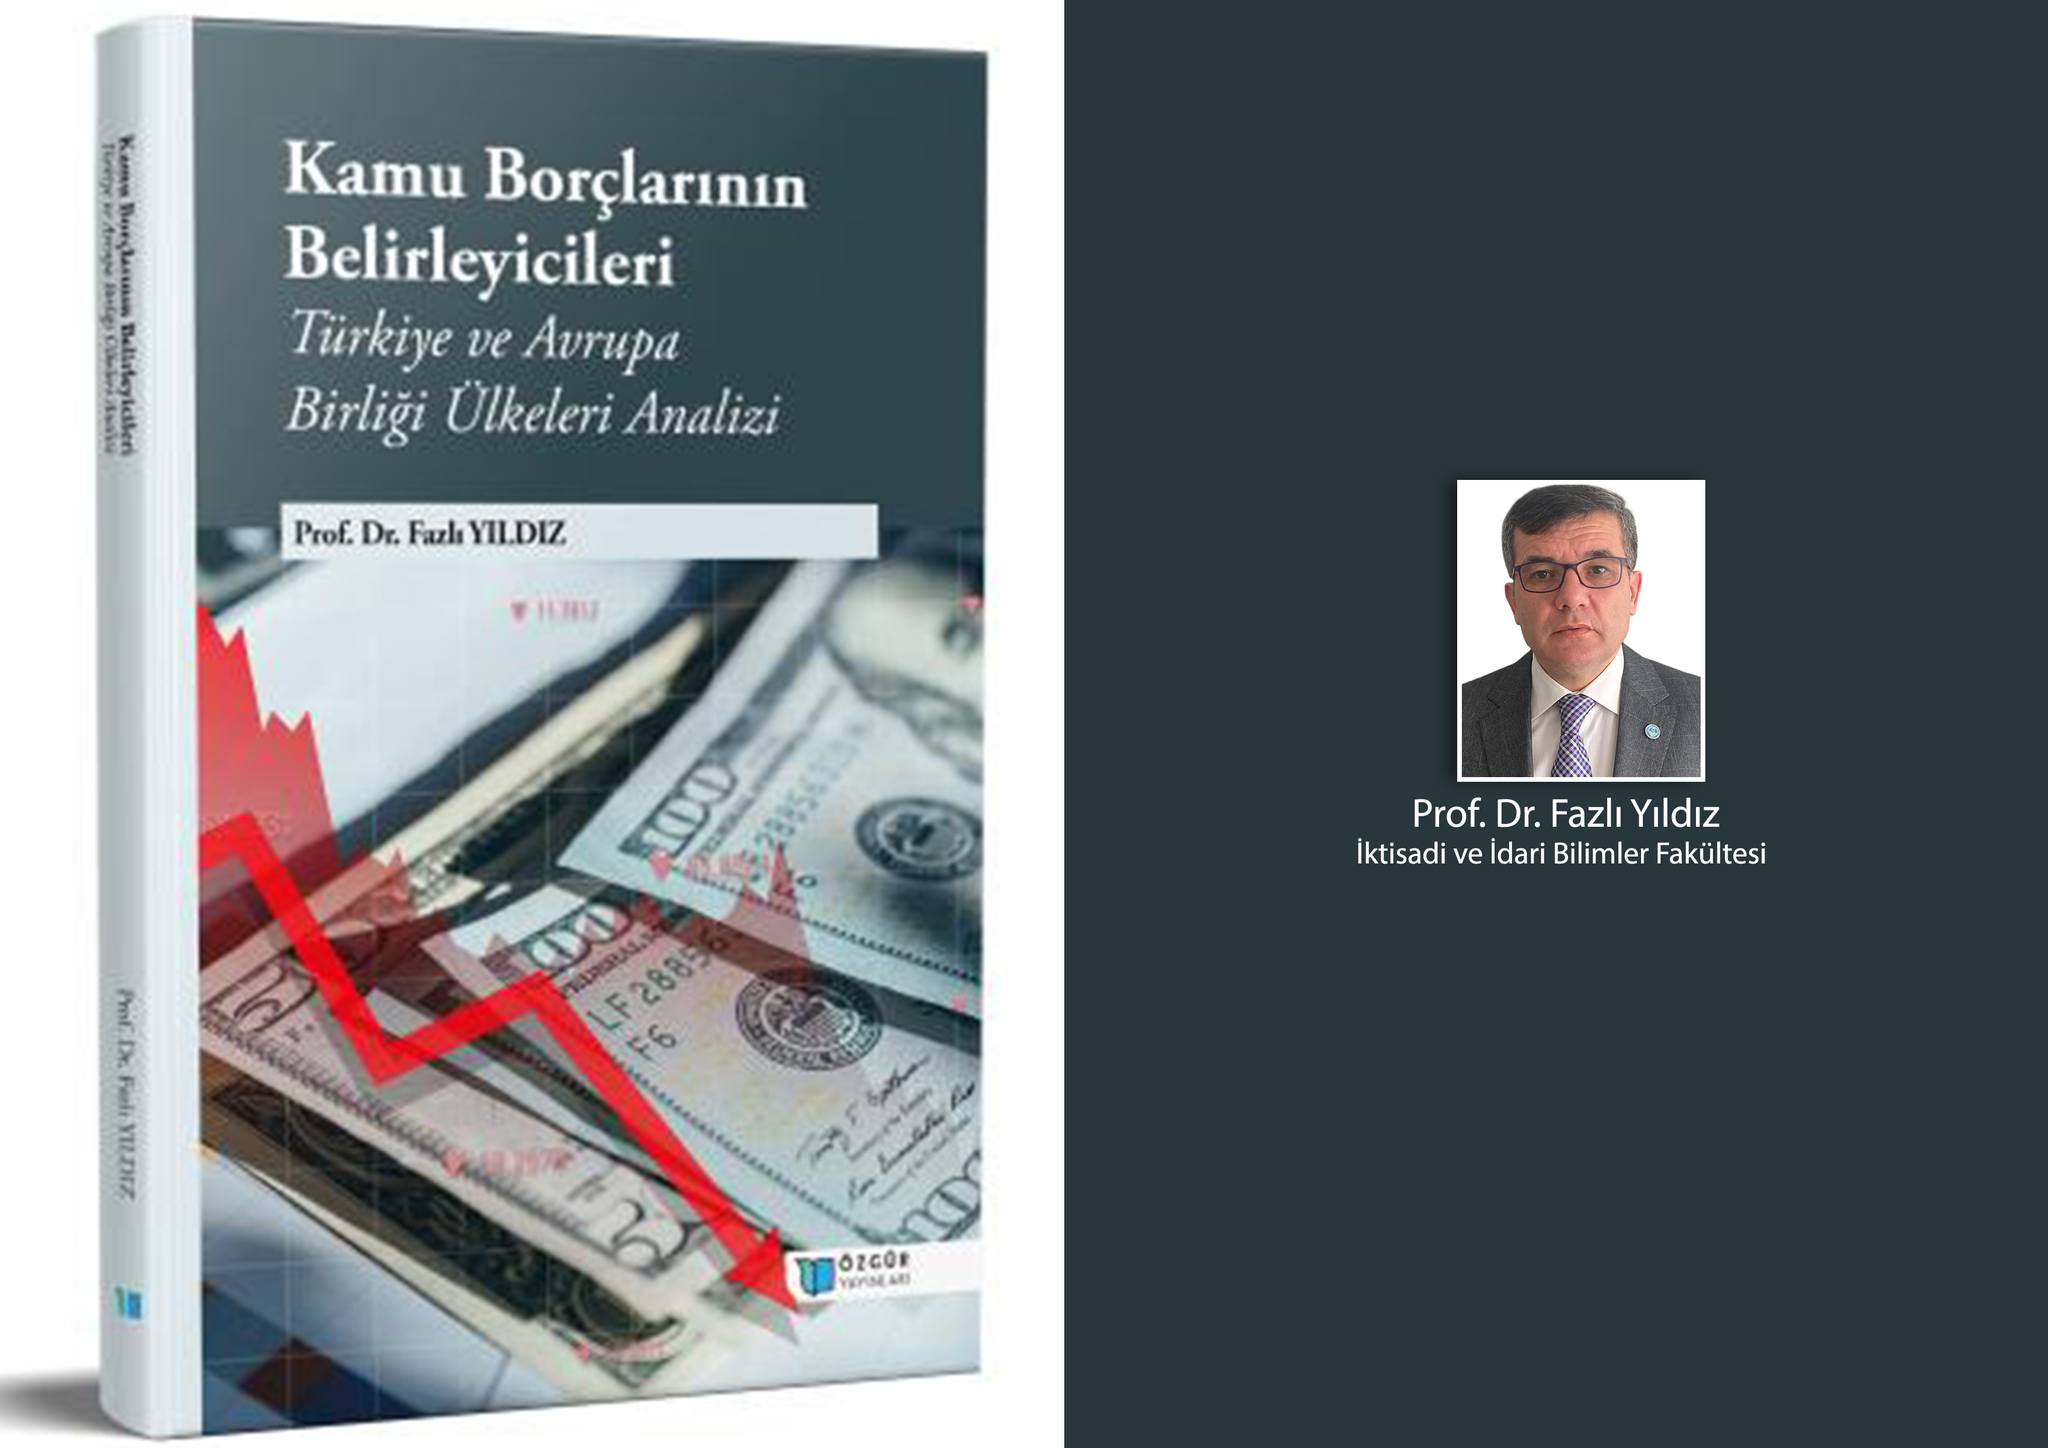 Balıkesir Üniversitesi'nden Prof. Dr. Fazlı Yıldız, kamu borçları konulu kitabıyla dikkat çekiyor.